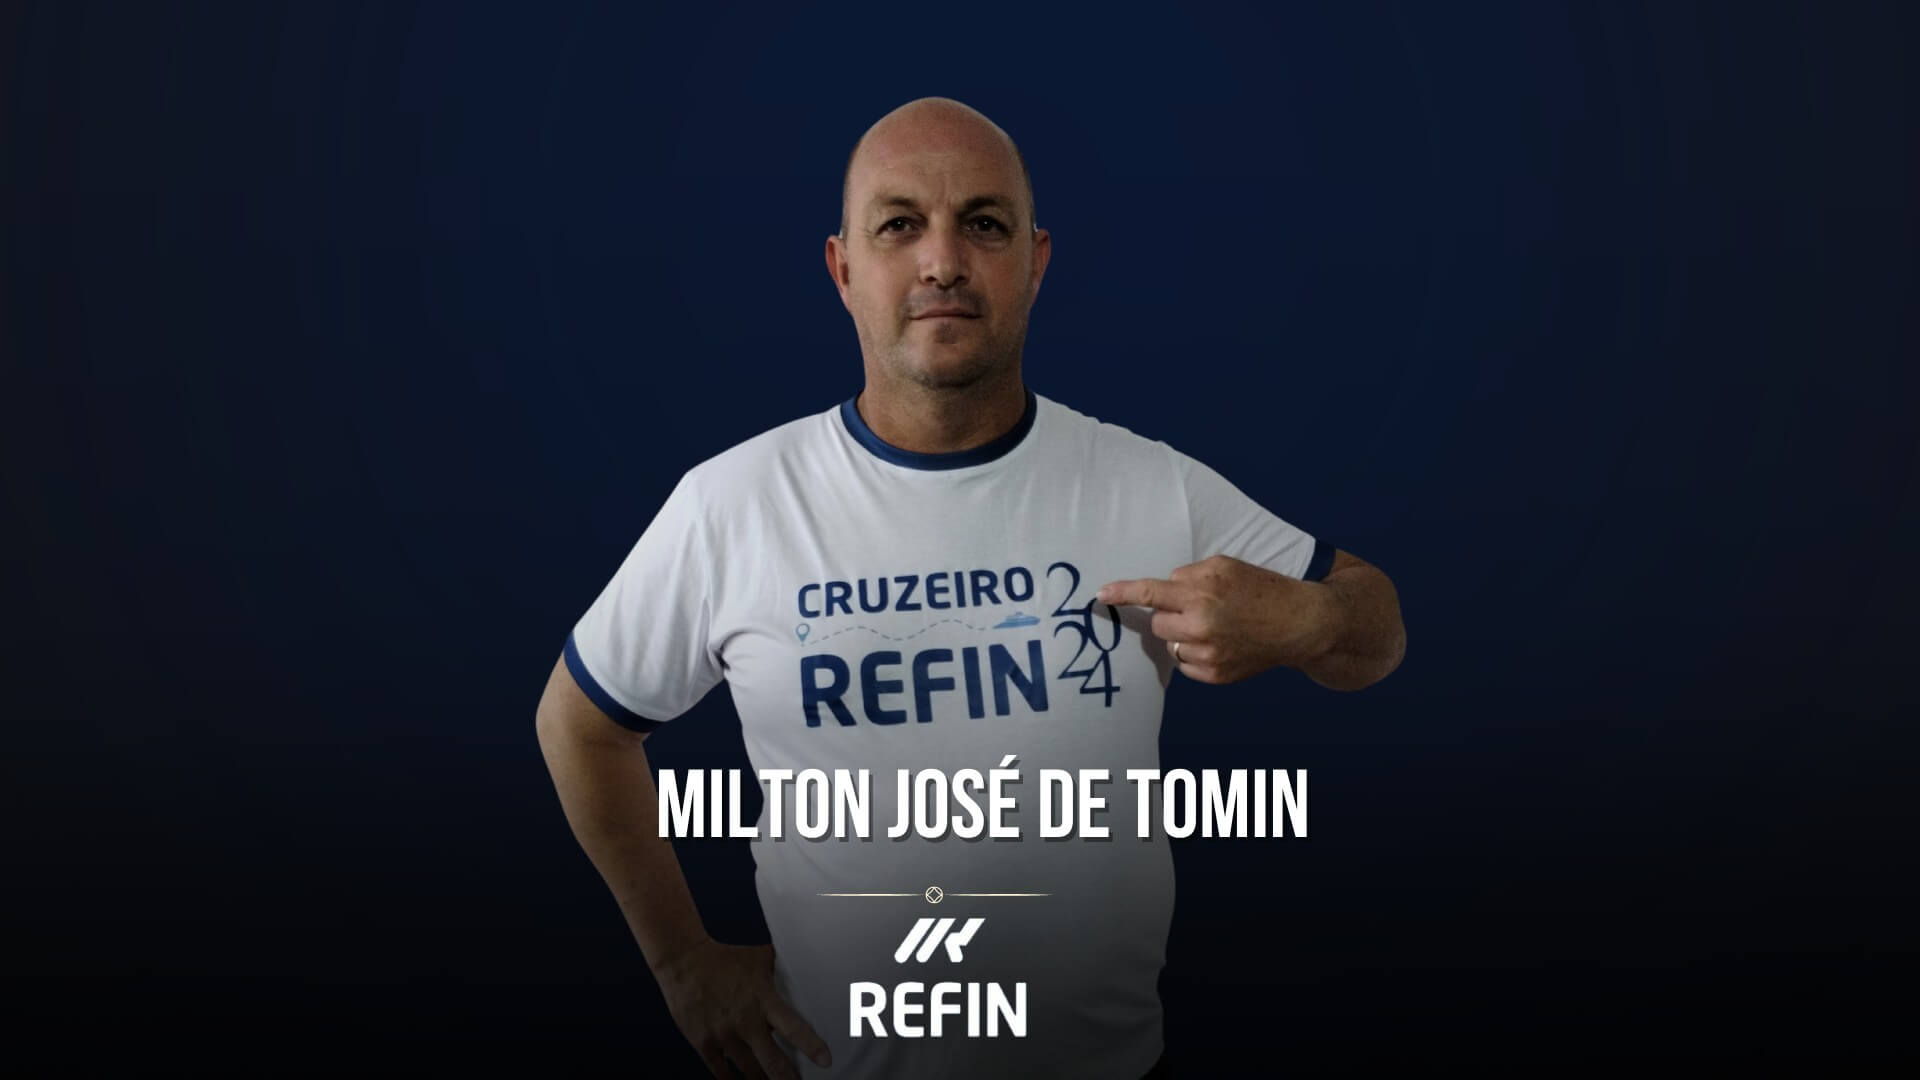 MILTON JOSÉ DE TOMIN